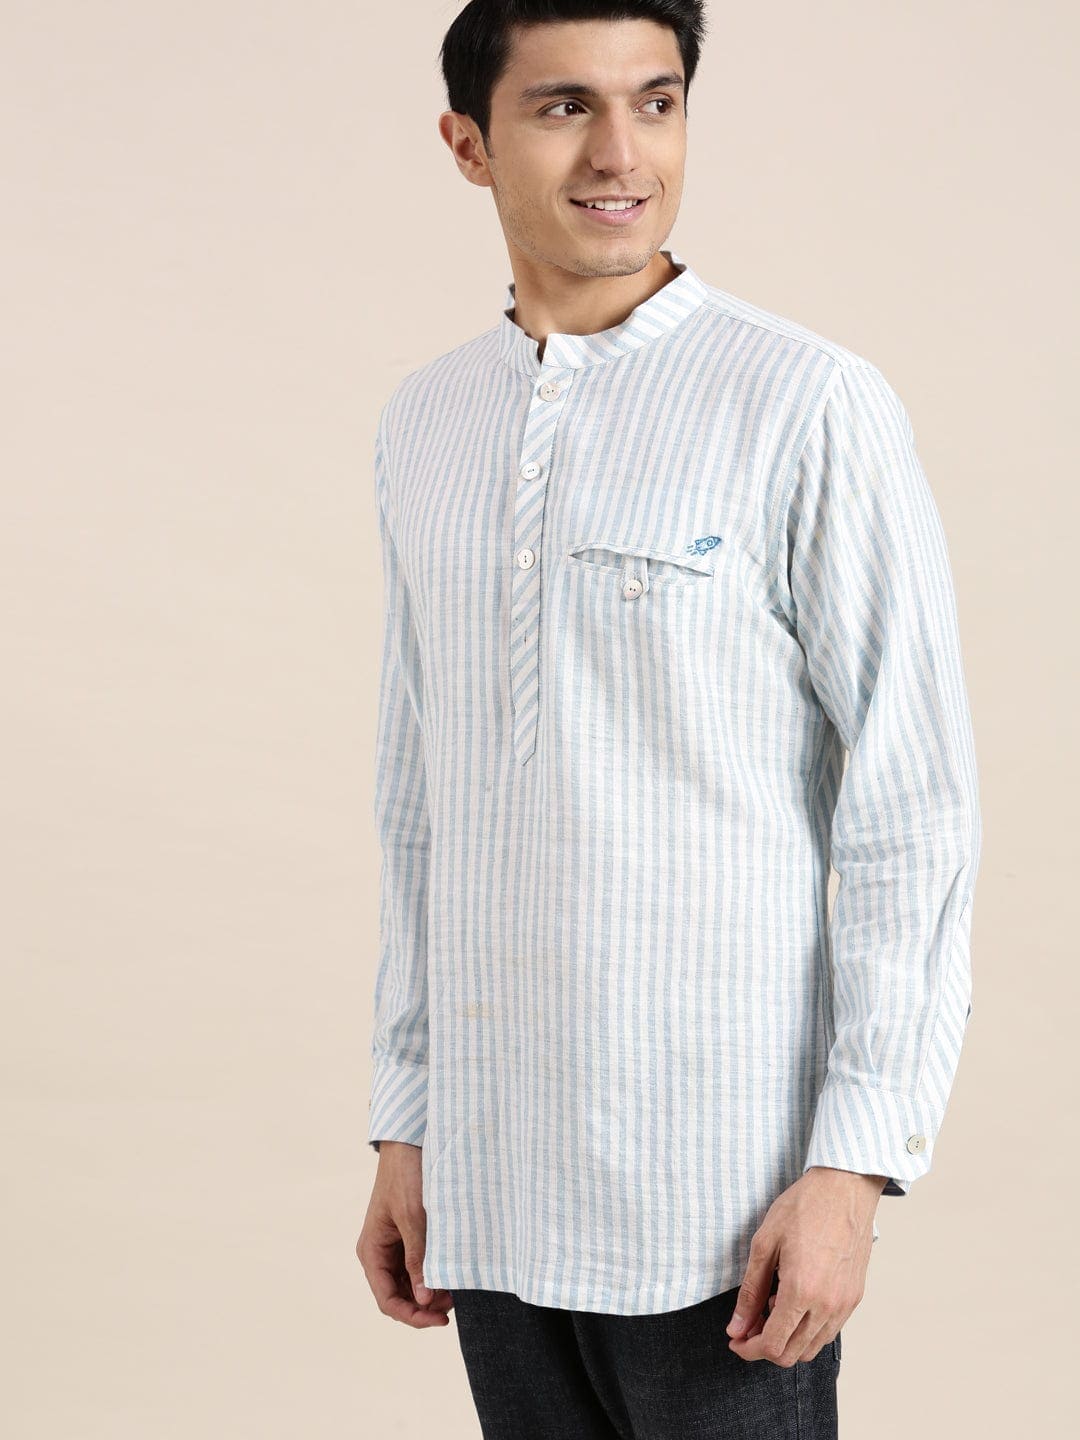 Blue Linen Soft Cotton Men Shirt - Charkha TalesBlue Linen Soft Cotton Men Shirt